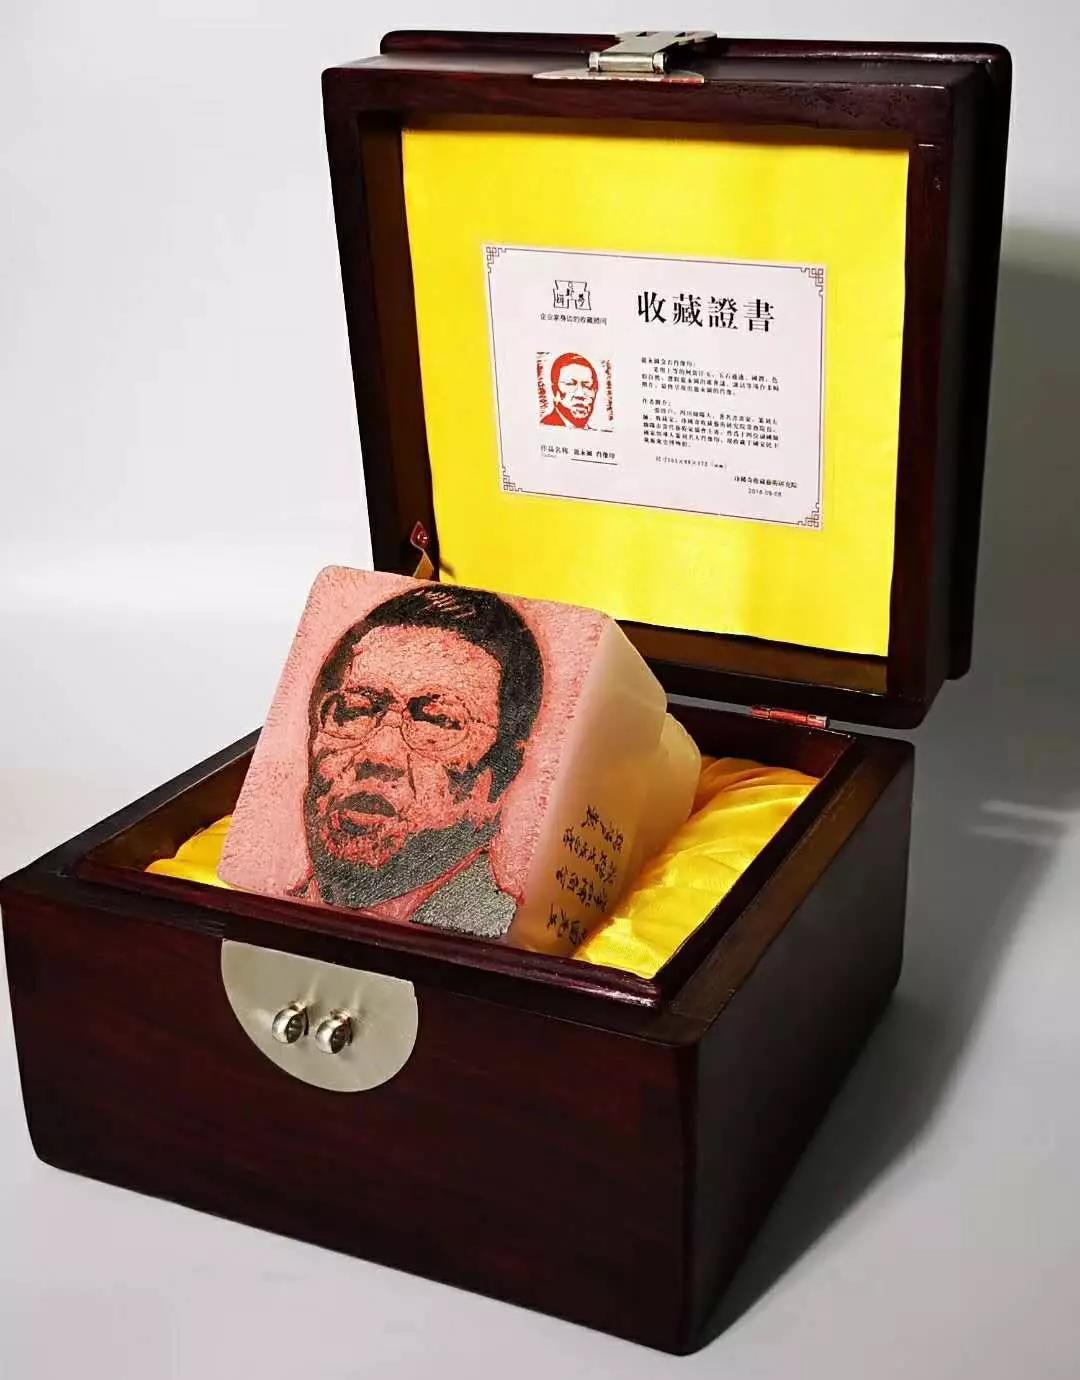 【民企盛典】卡酷尚董事长郭晓林赠予潘基文、龙永图金石肖像印